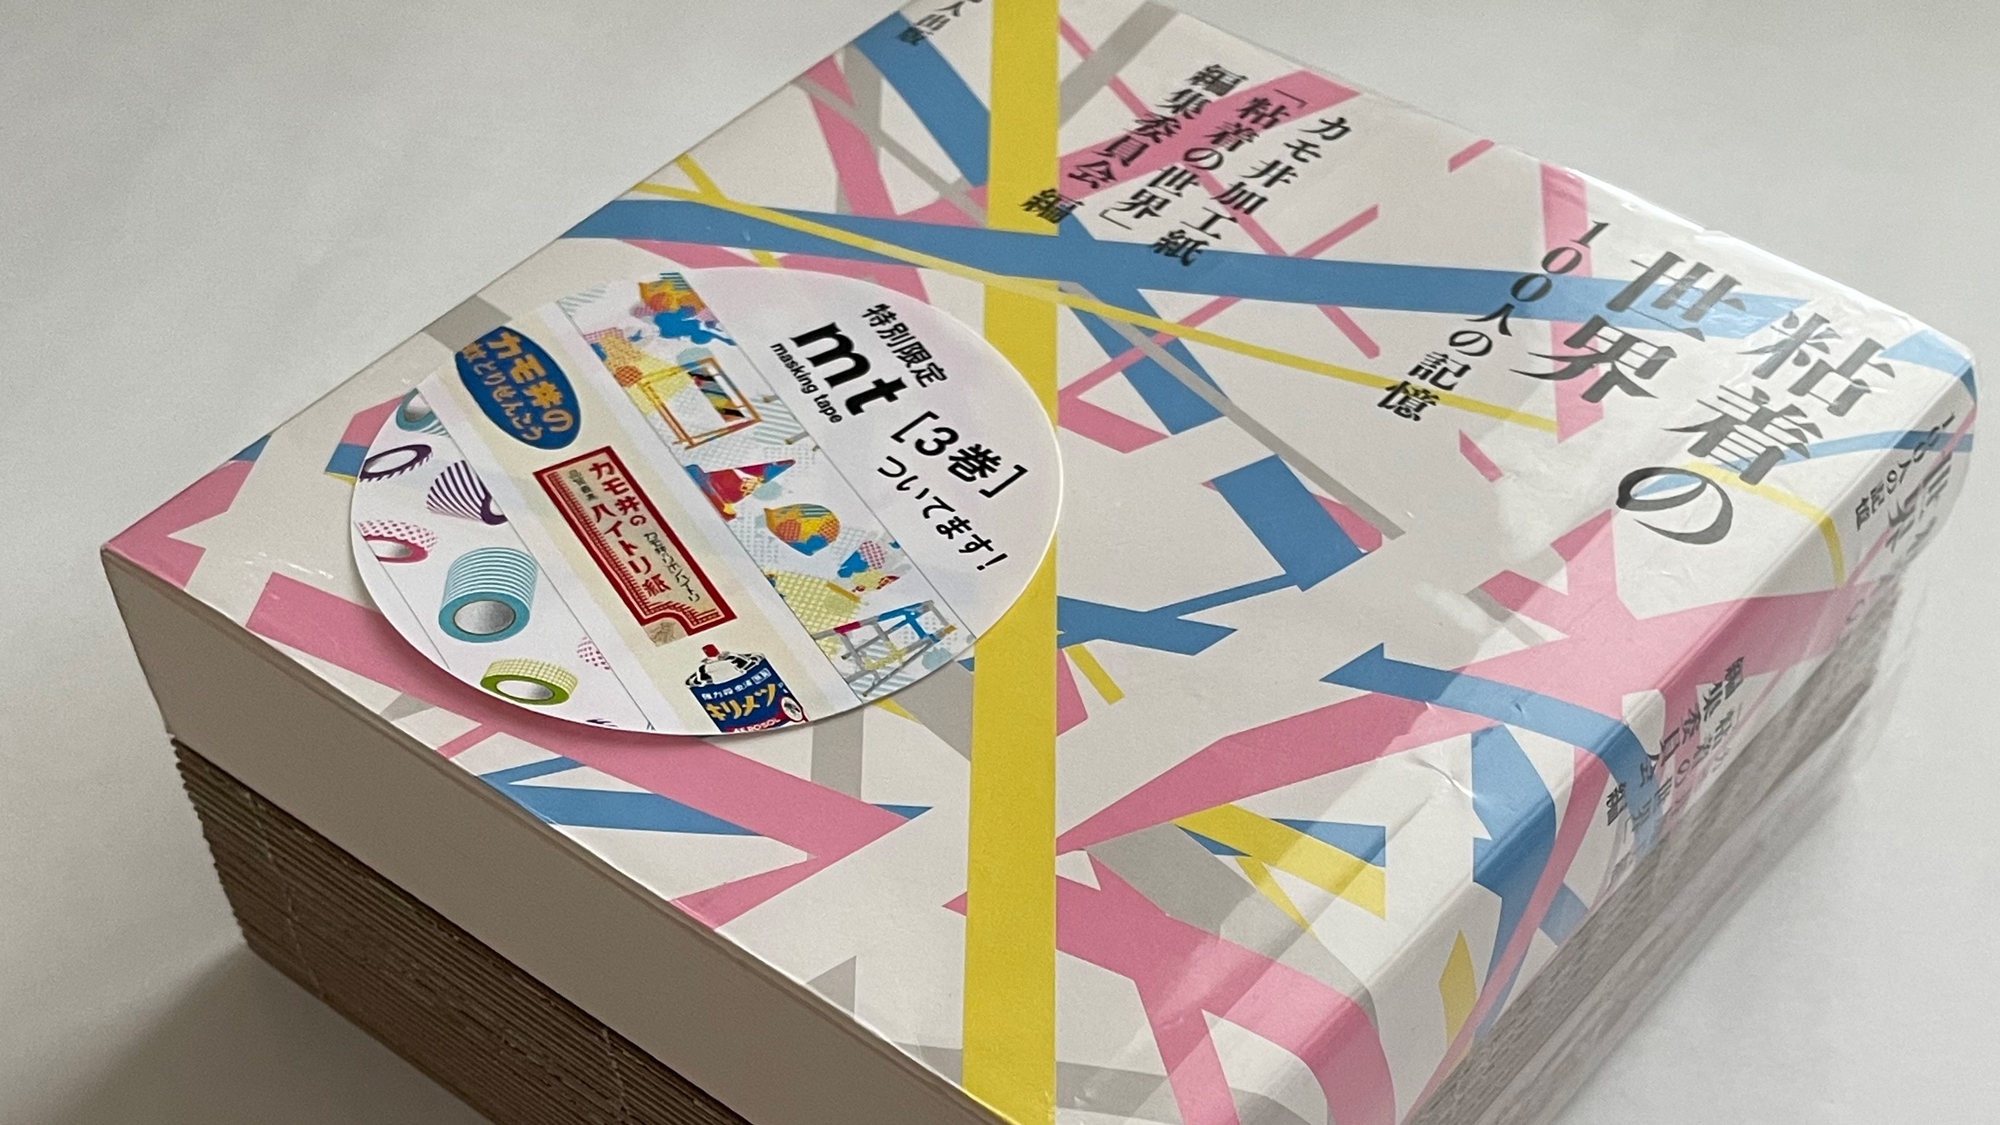 カモ井加工紙創業100周年記念出版 『粘着の世界――100人の記憶』